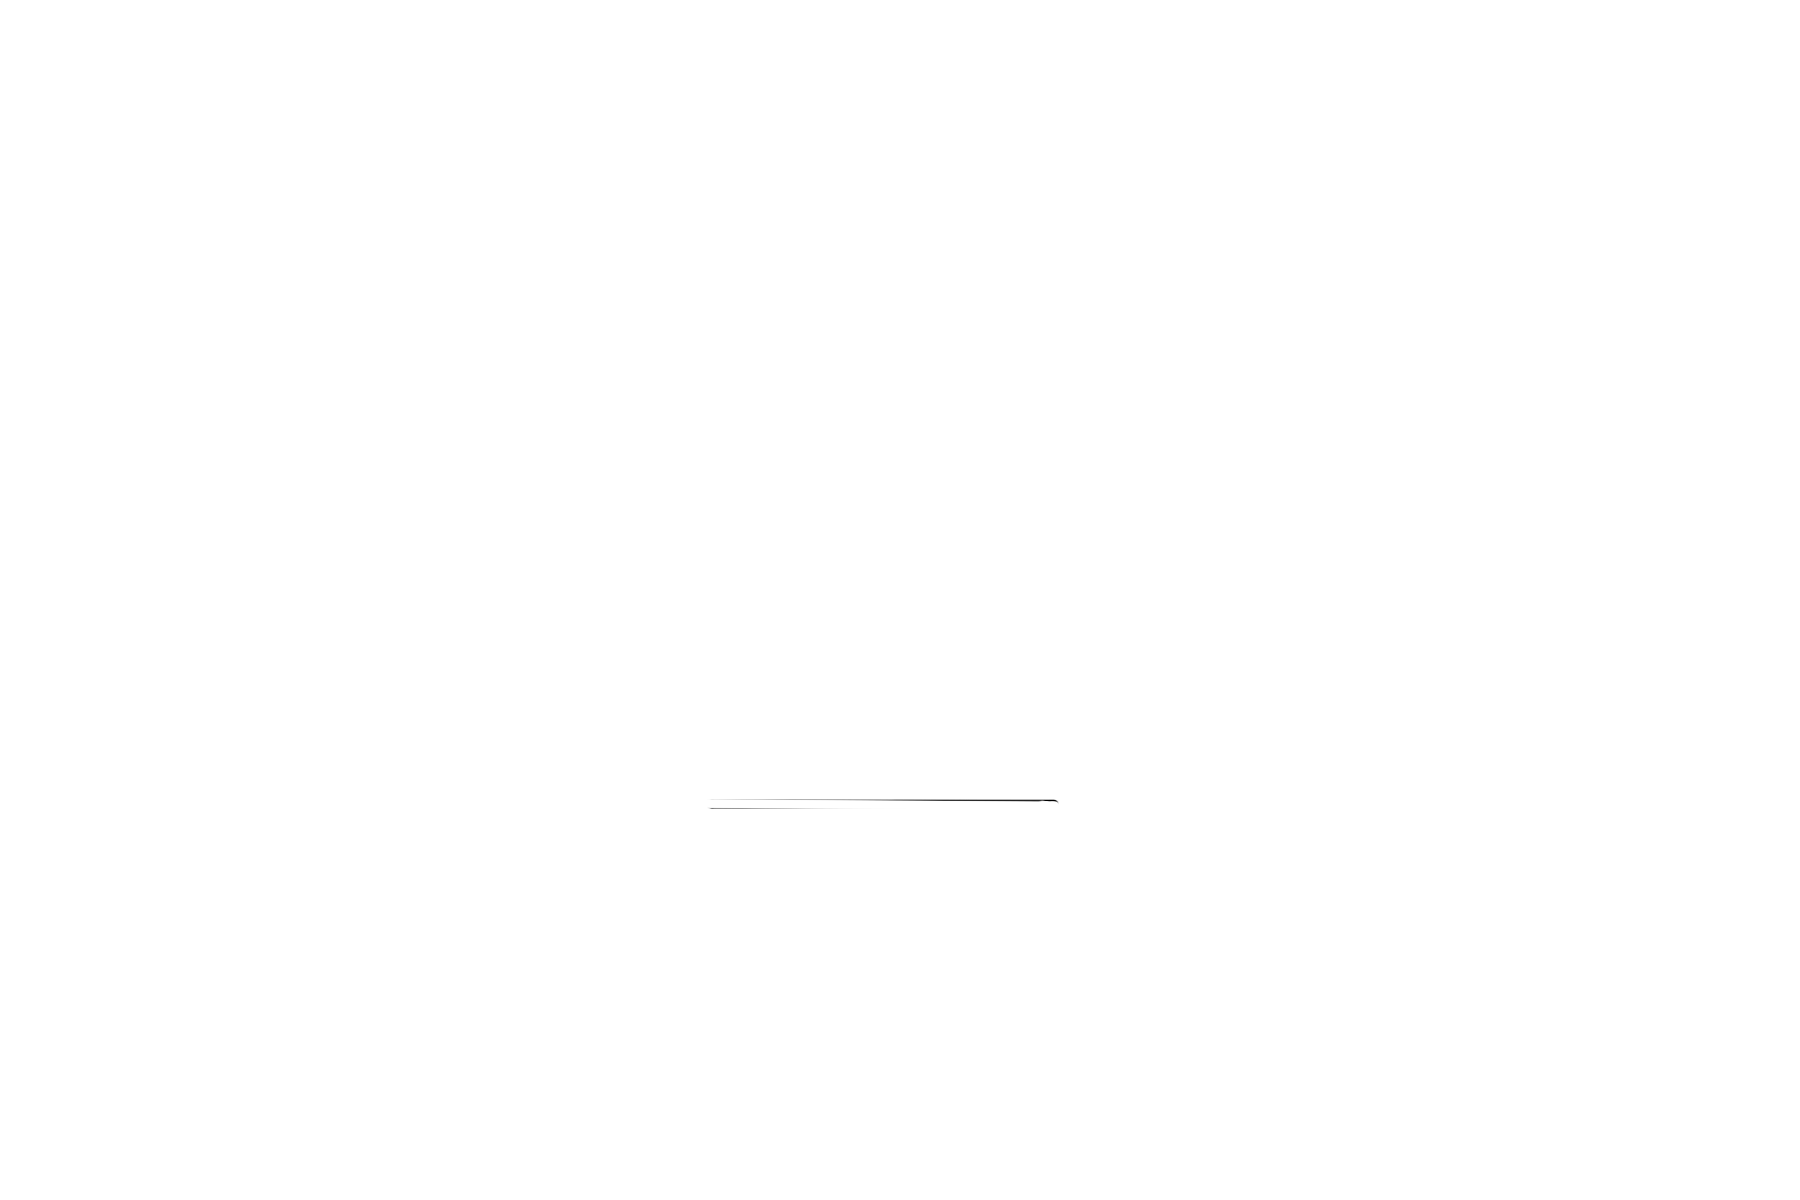 InsaneSocietySupply